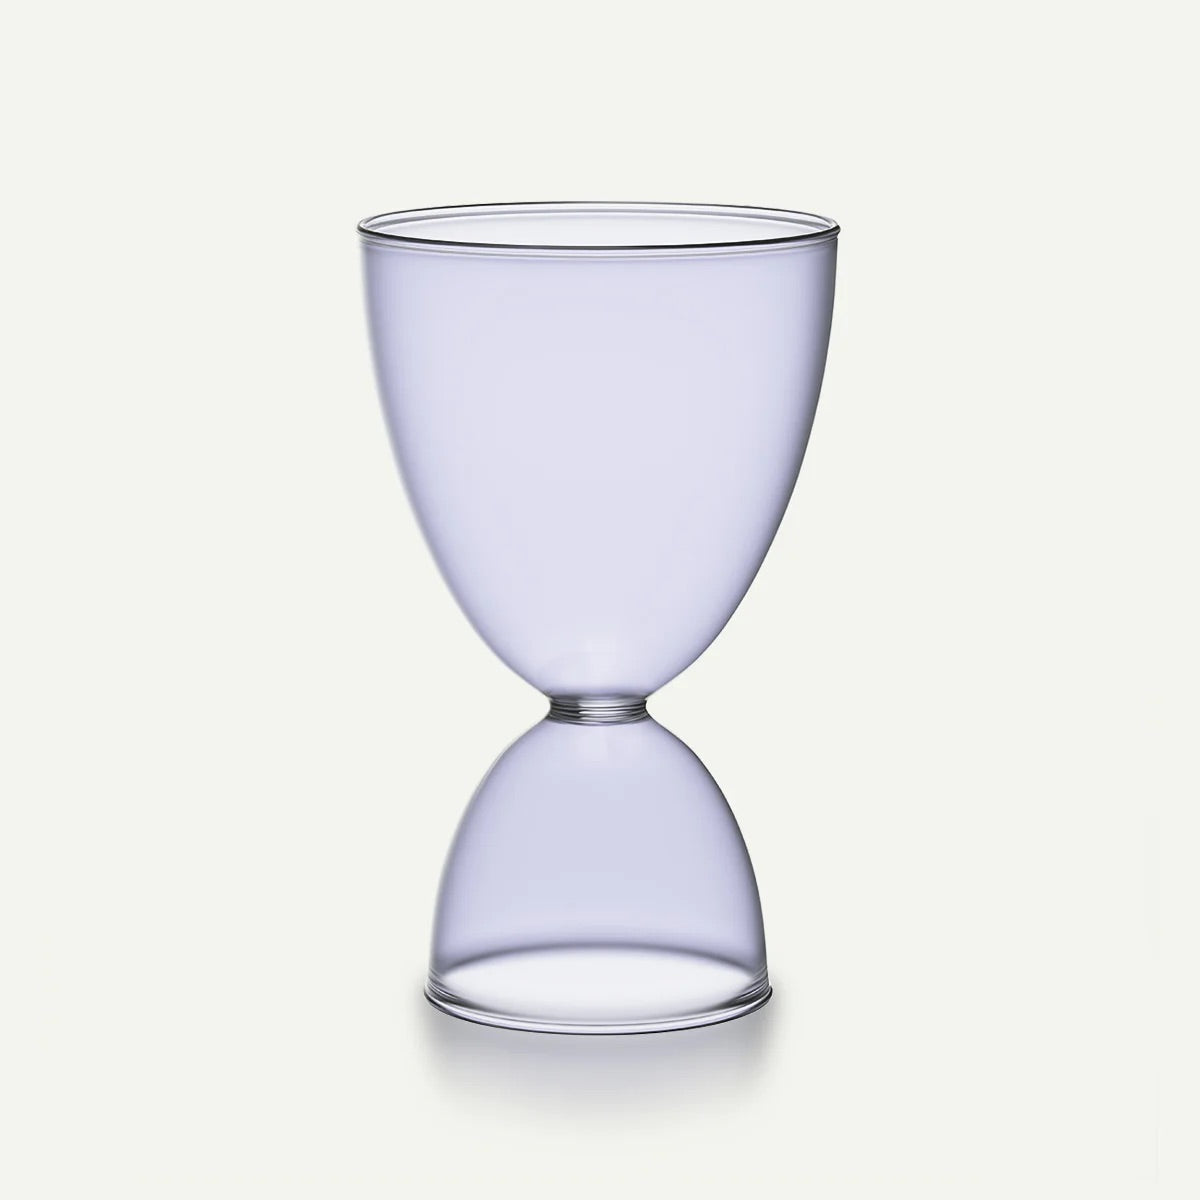 Mamo Classic Cocktail Glass - Monotone